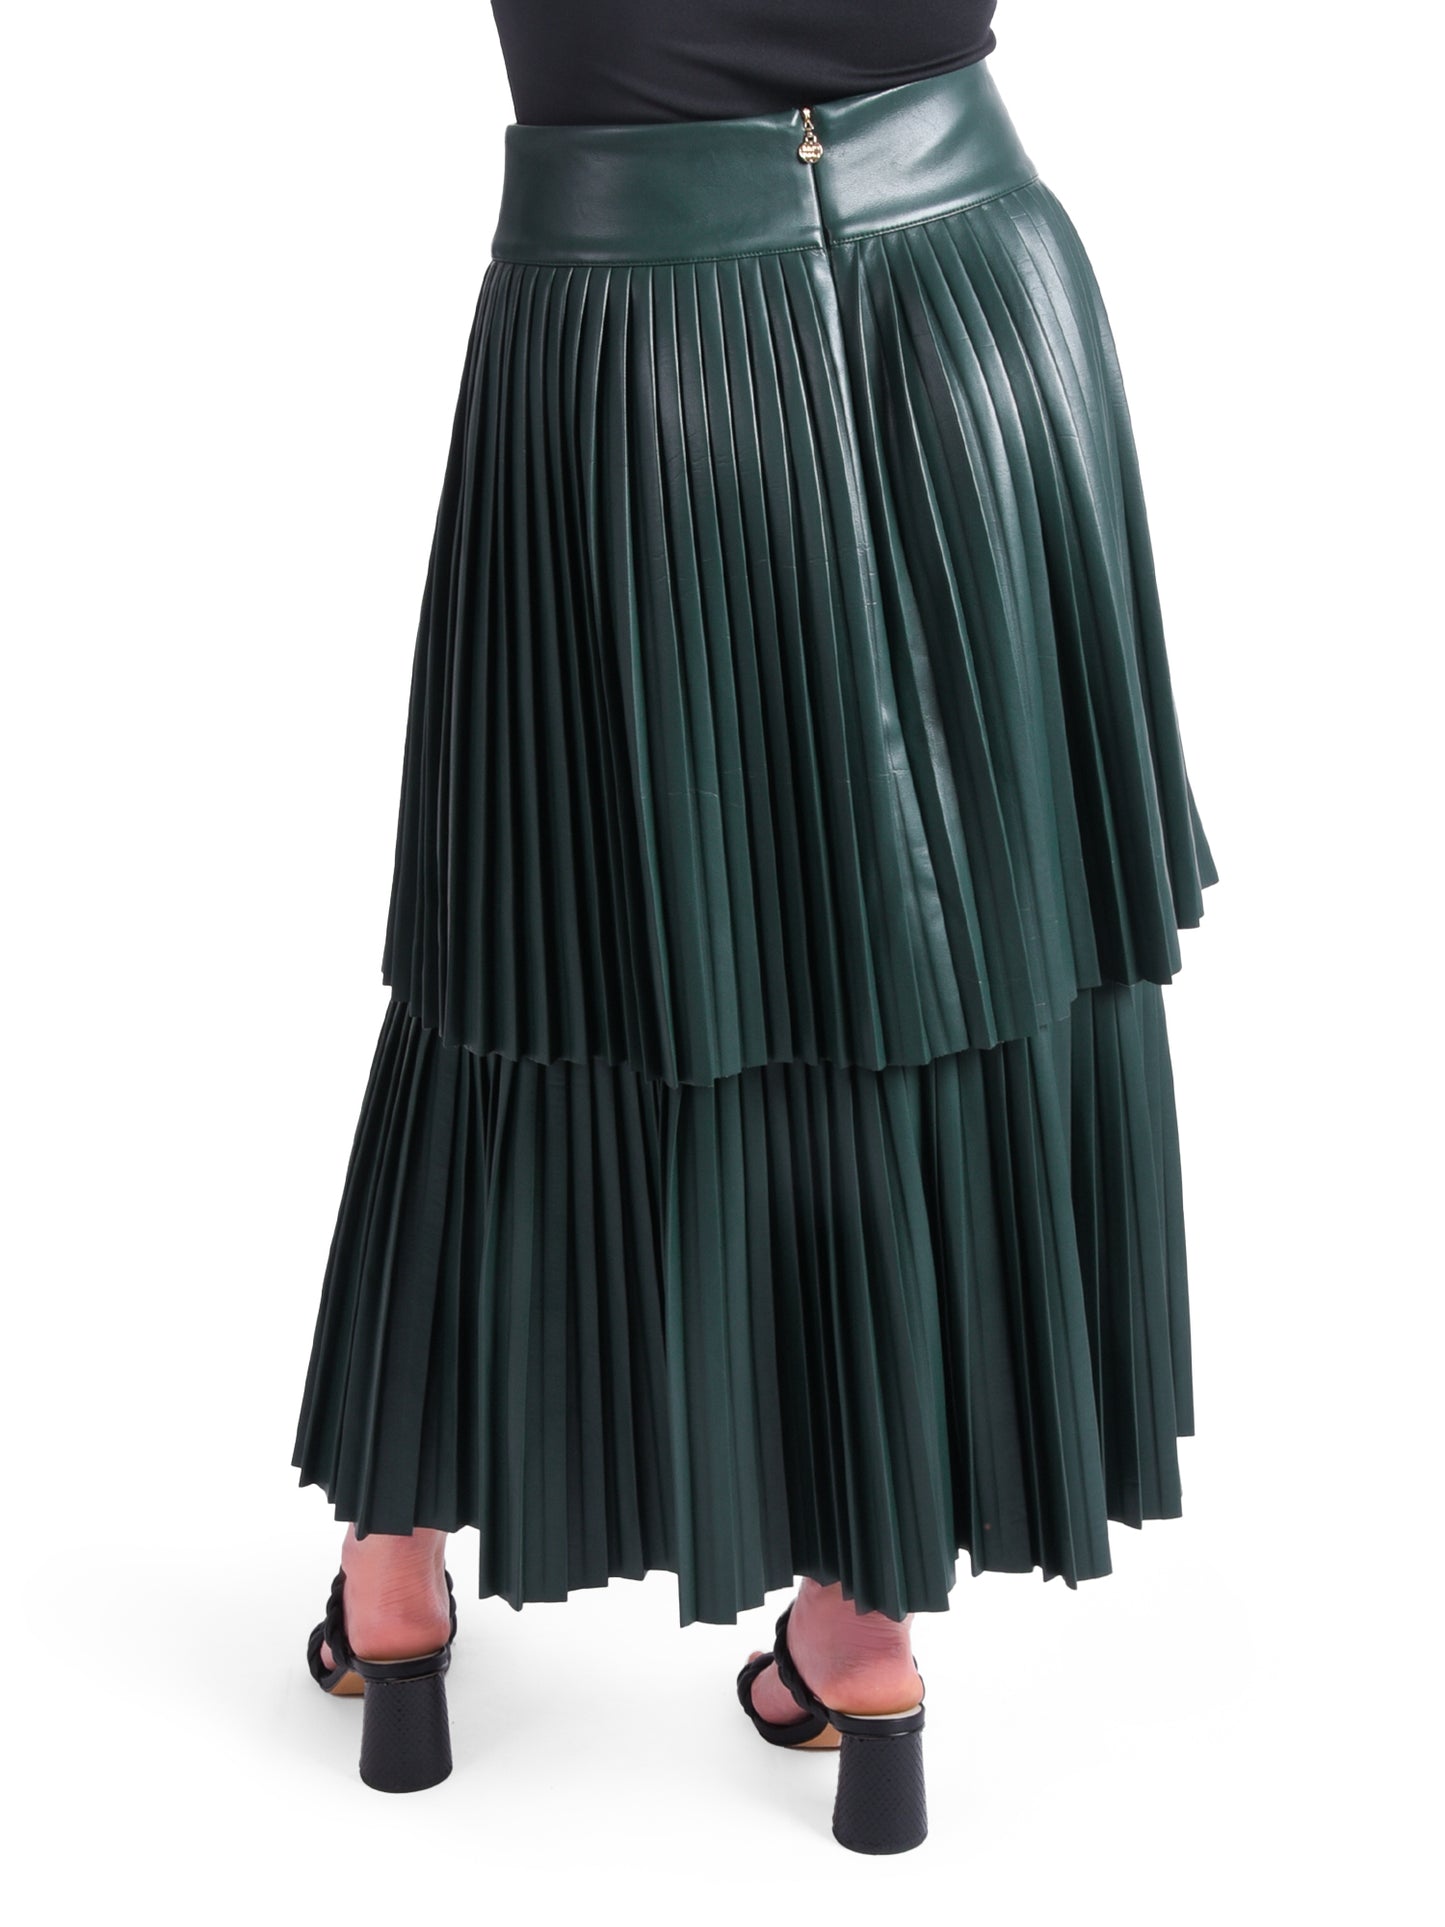 Chloe Skirt in Scarab by Emily McCarthy